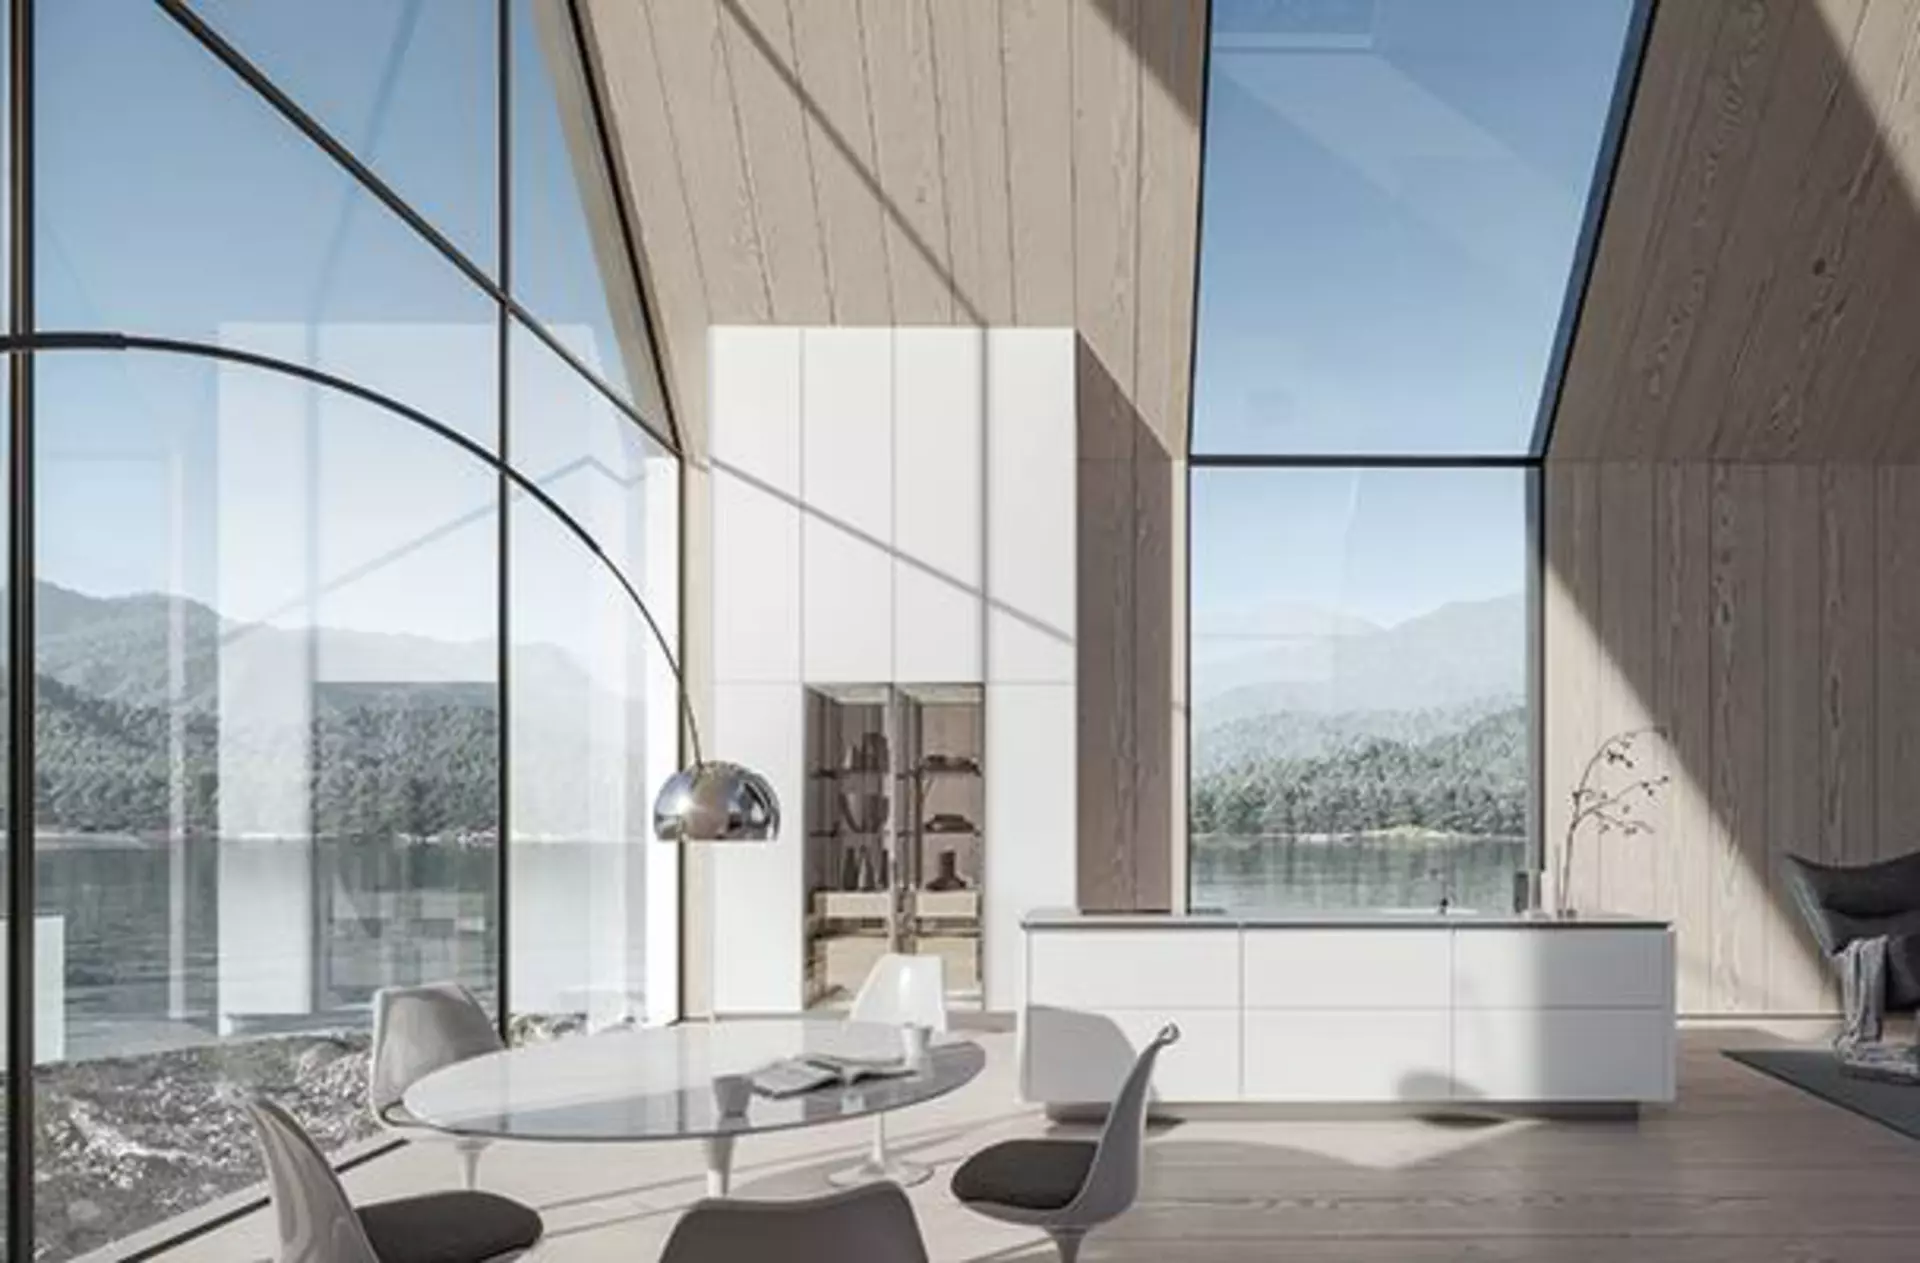 Weiße Kücheninsel und hohe Küchenschränke neben einer  deckenhohen Glasfront ist das Aushängeschild der neuen SieMatic Küche und dient als Kategoriebild für den Premiumbereich First-Class-Küchen.